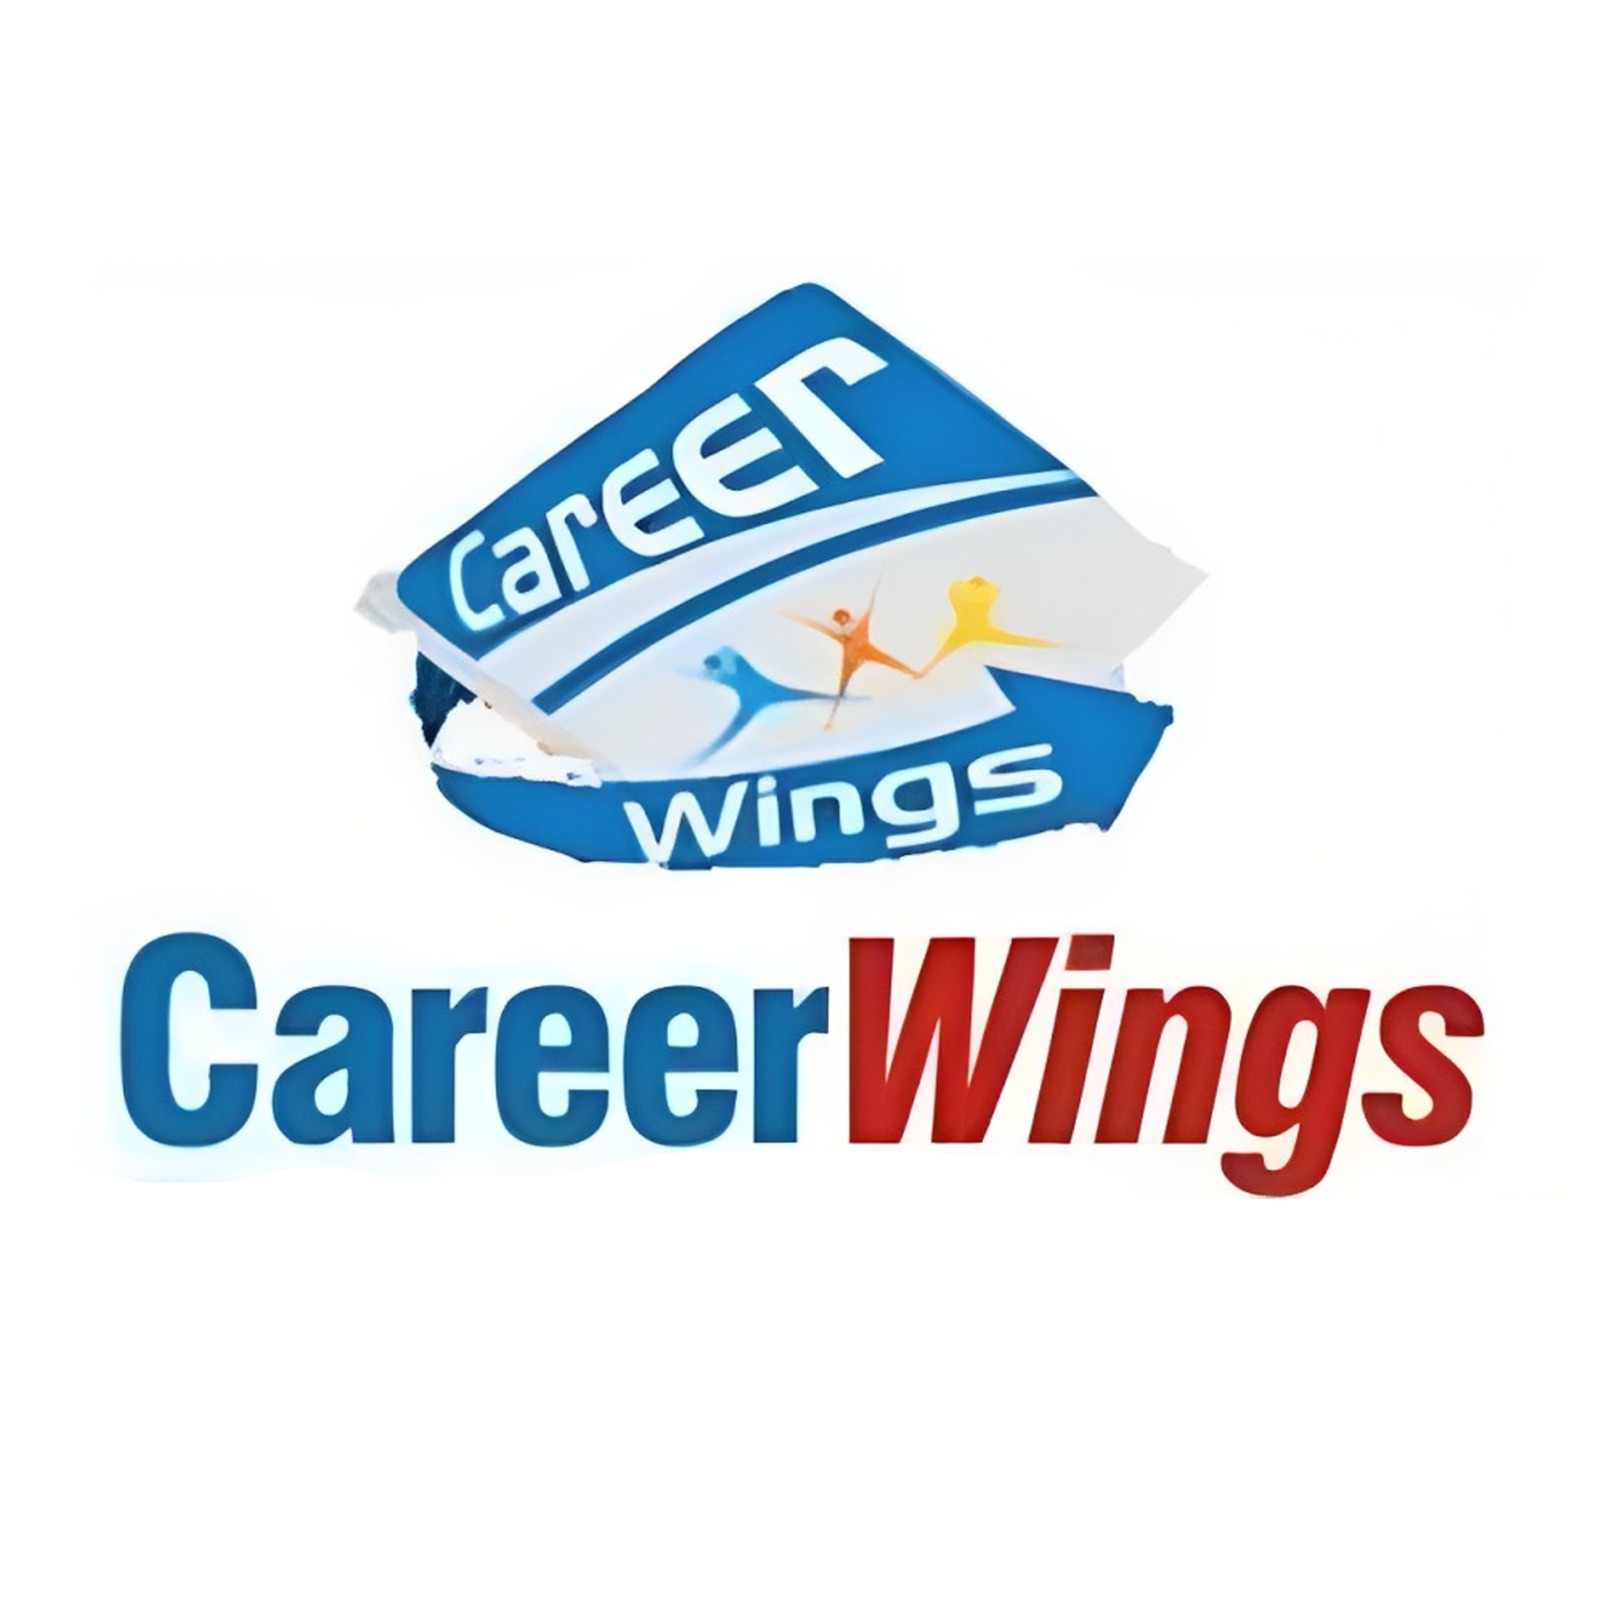 Career Wings